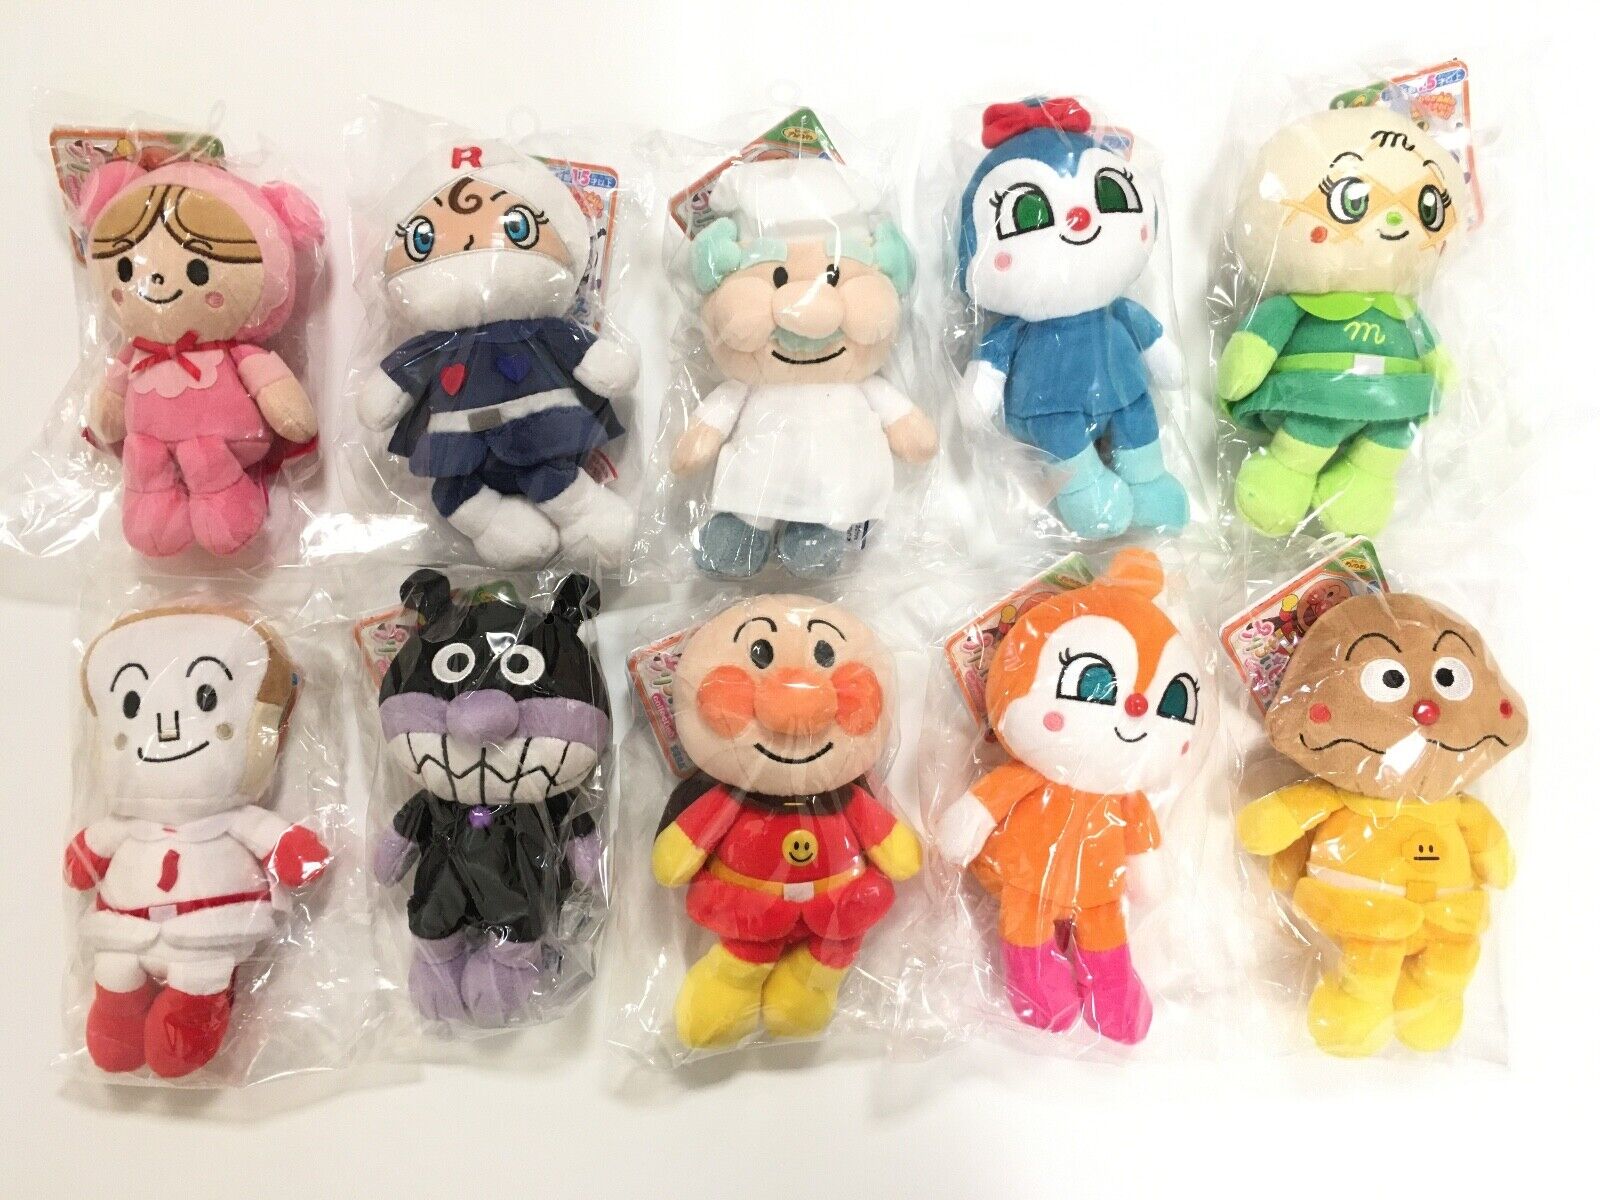 [NEW]Anpanman Pretty Doll S Size Beans Plus Stuffed Toy Animal Plush Doll set